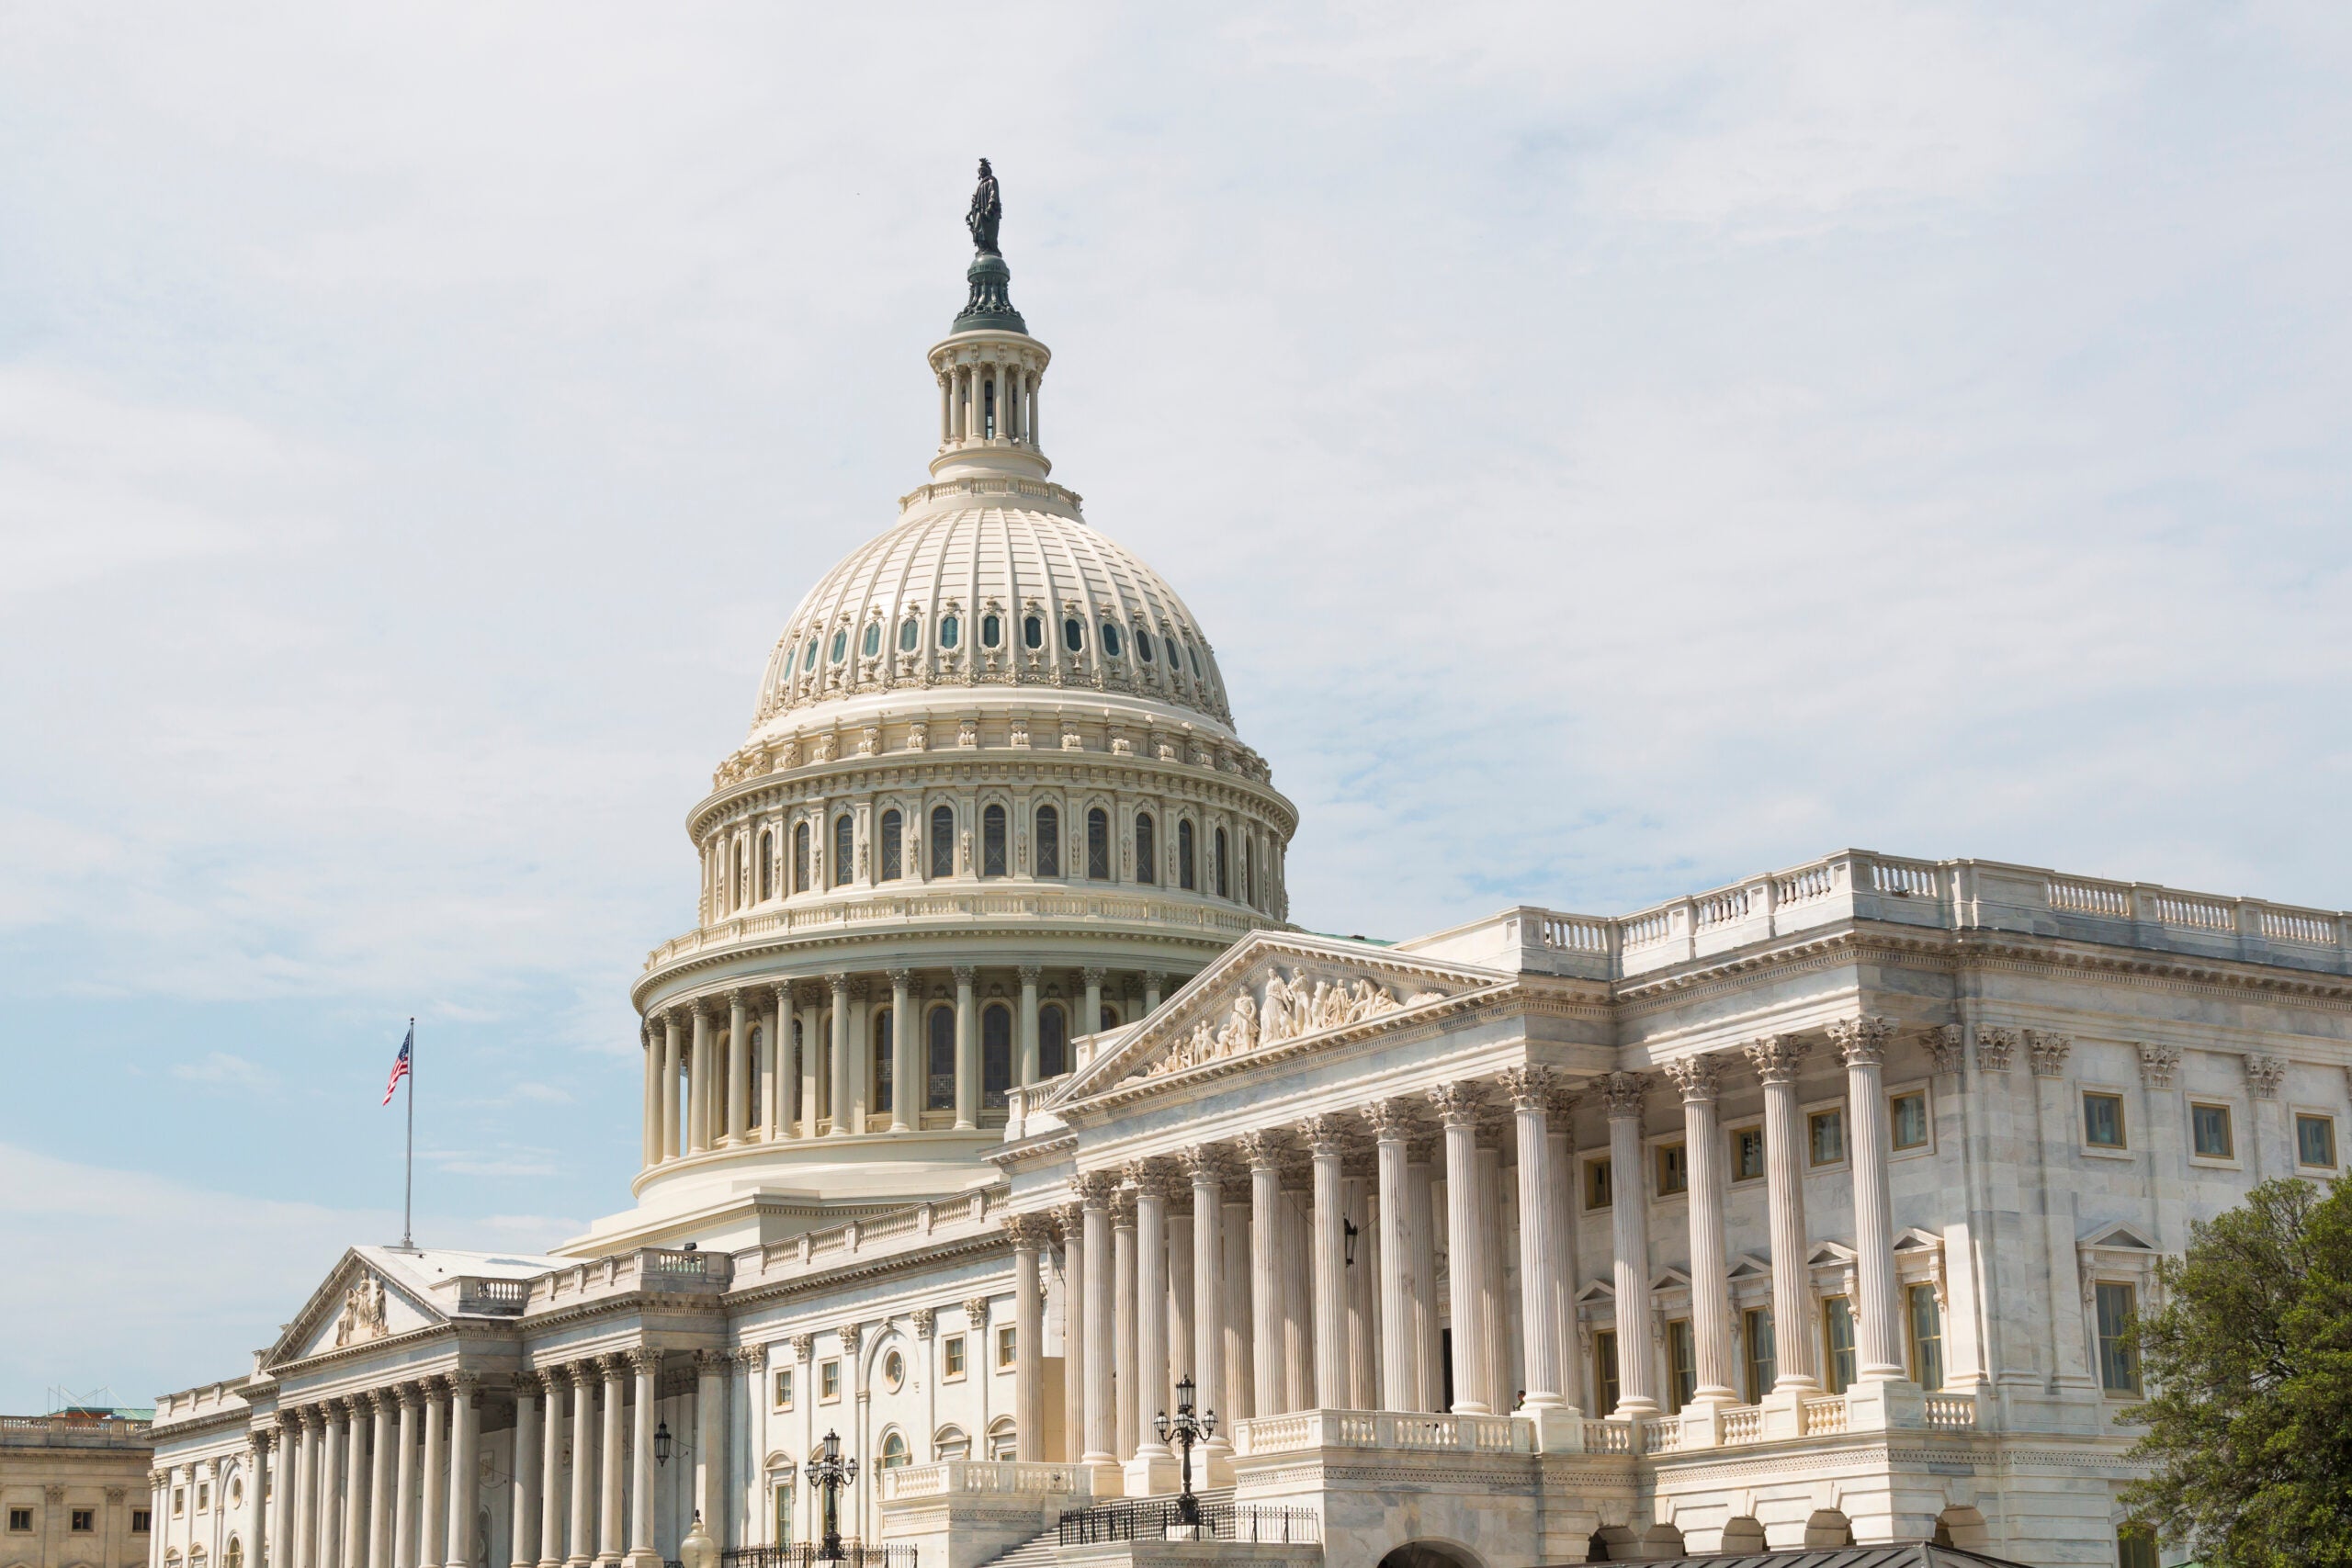 FAA Reauthorization Bill Passes Senate Committee